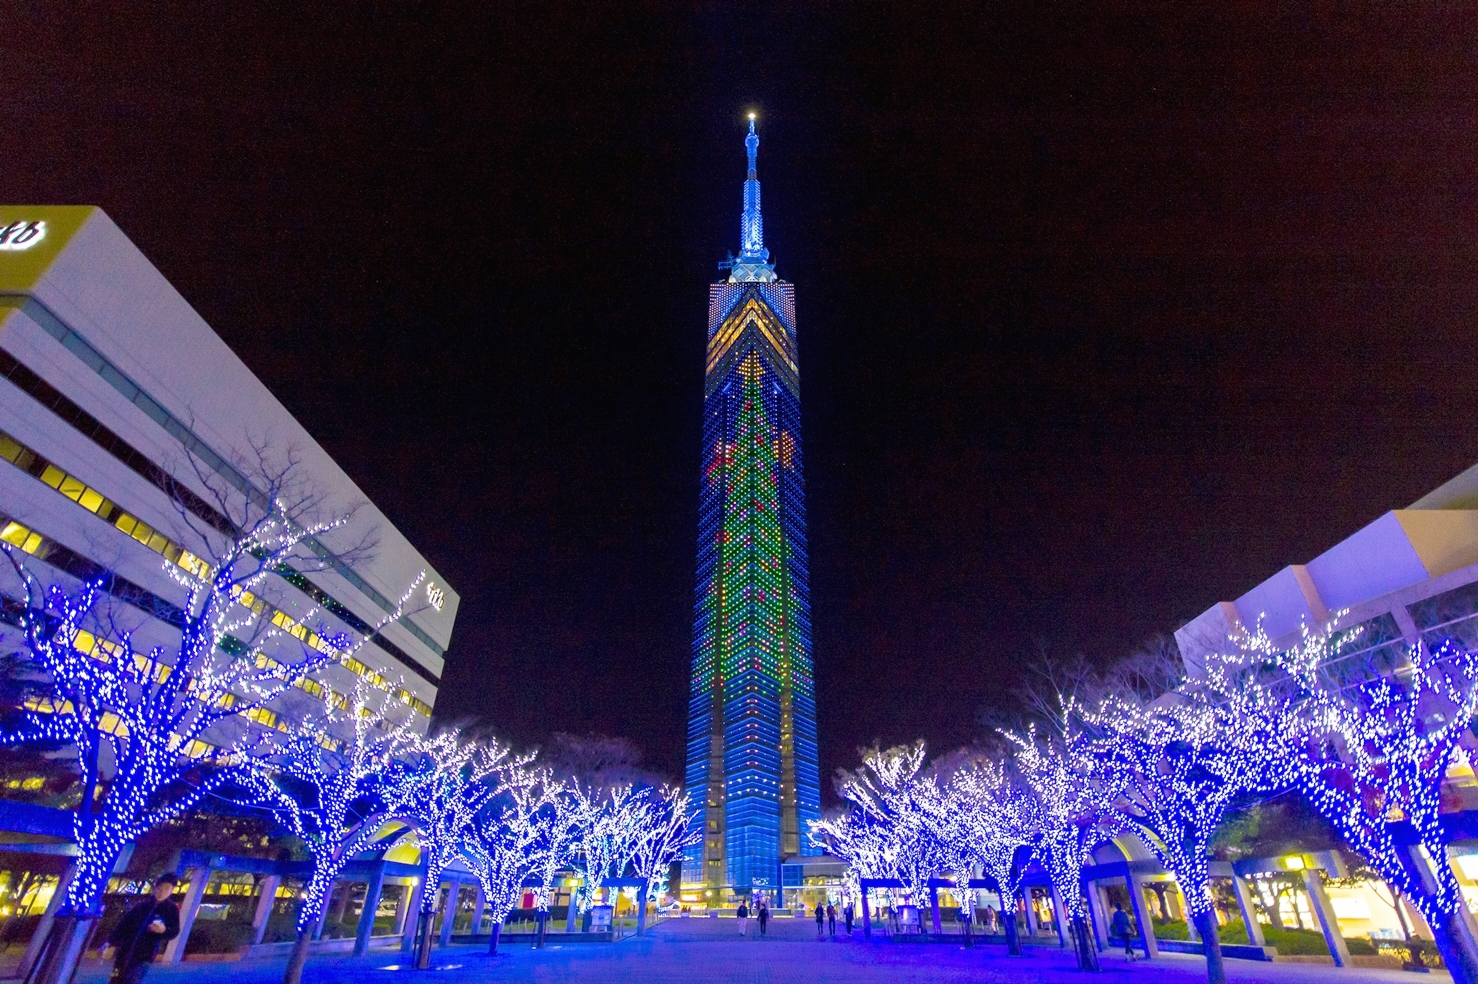 福岡市的地標–福岡塔。塔高234米，係日本第三高塔，僅次於東京天空樹和東京鐵塔。啟用於1989年3月，主要用於電視、廣播訊號發射以及觀光。塔身外觀由8,000面分光鏡覆蓋，為正三角形柱狀。三角柱上部形似福岡市市徽，每年的聖誕節及七夕時期均會進行點燈裝飾。開放公眾進入區域共有五層，最高處的瞭望台高123米，乘電梯70秒到達，可在此一覽福岡市區全景。